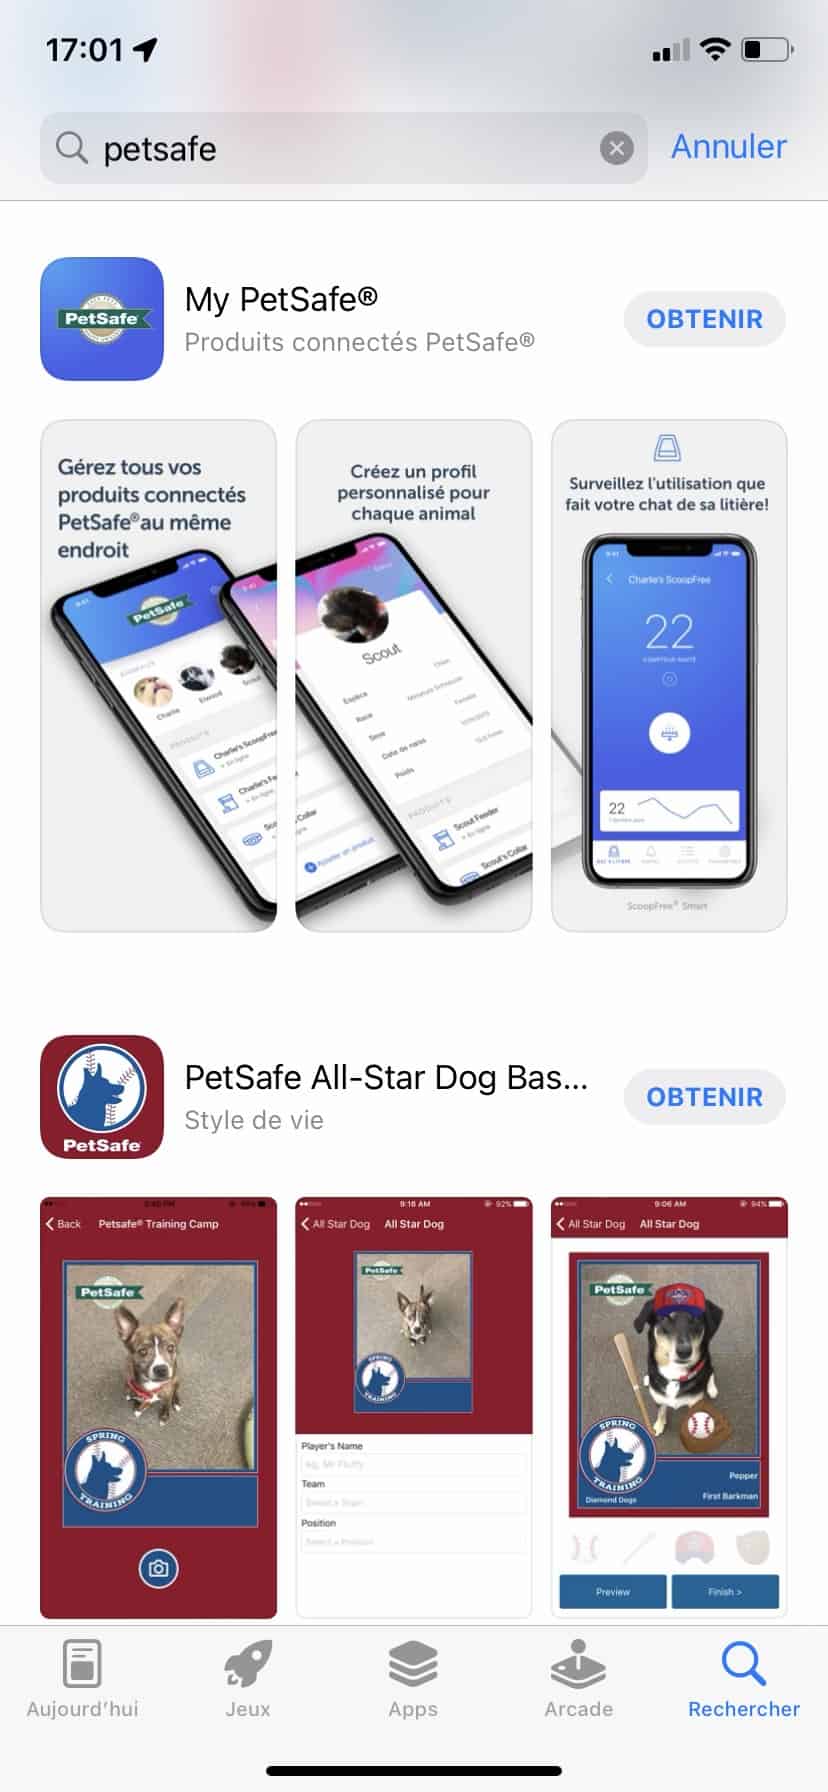 Attention que pour controler le PetSafe Smart Feed c'est l'app "My PetSafe" qu'il faut chercher